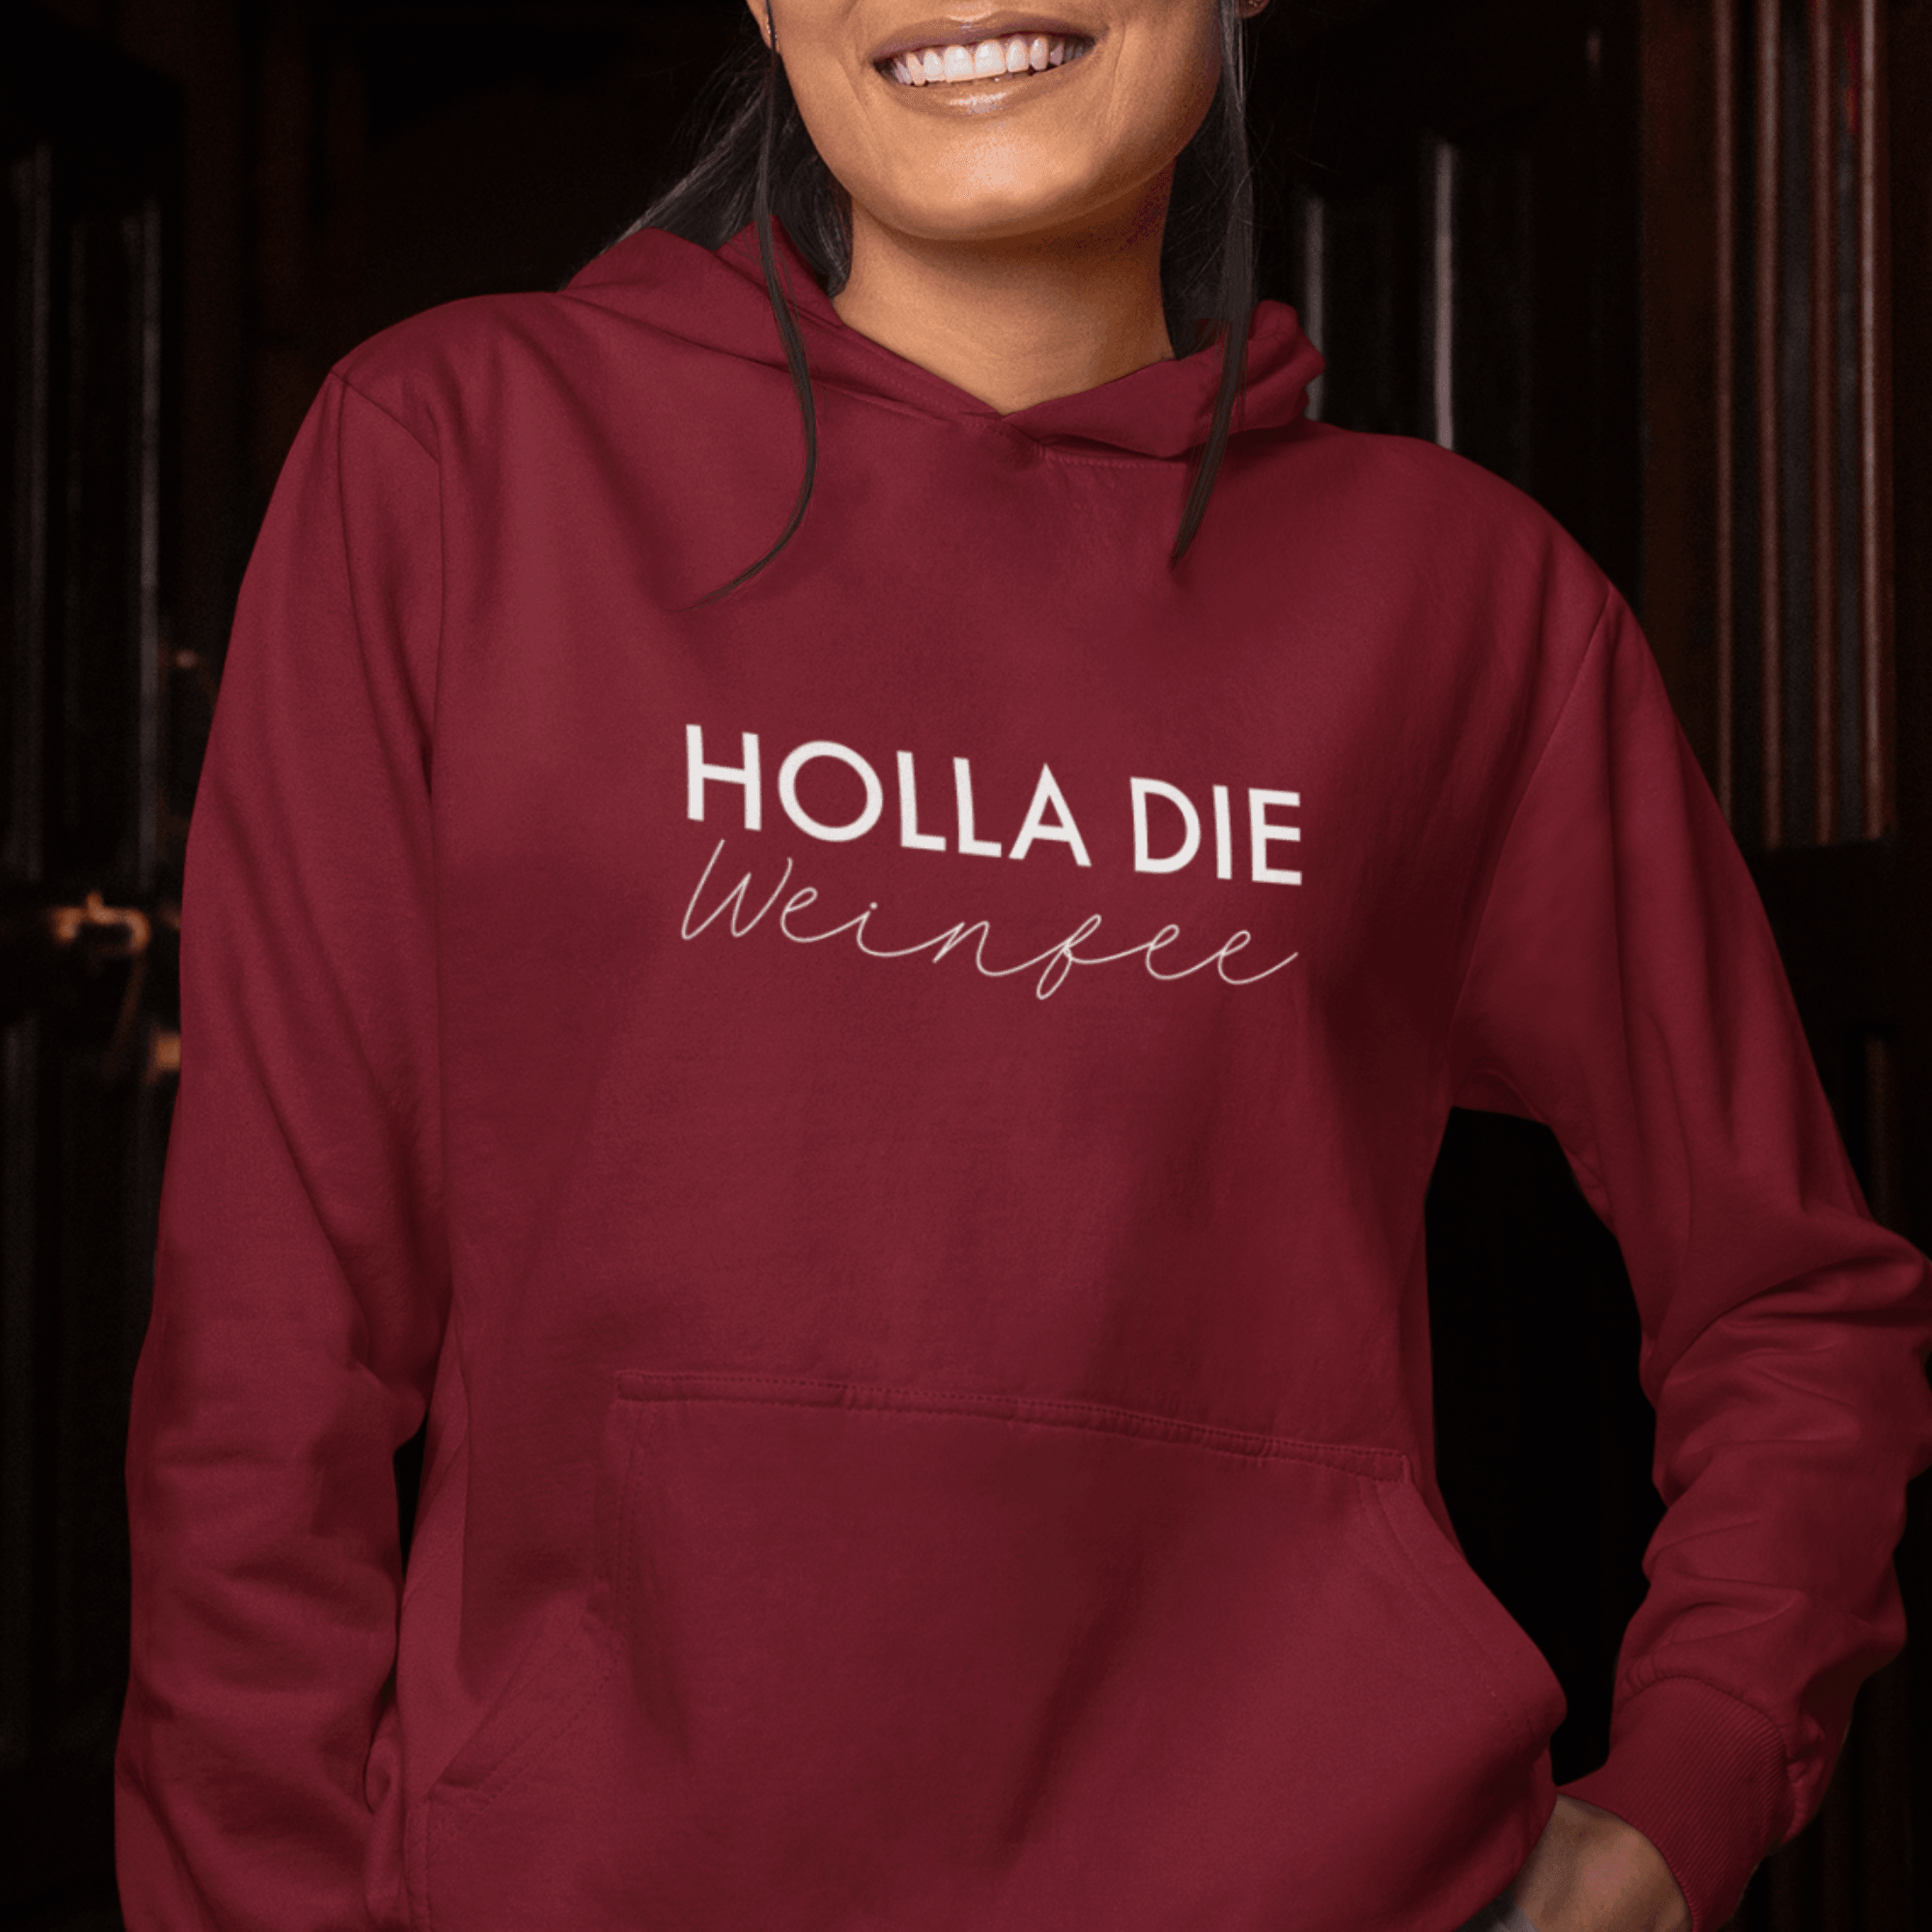 HOLLA DIE WEINFEE - Damen Hoodie aus Bio-Baumwolle - einschenken24.de